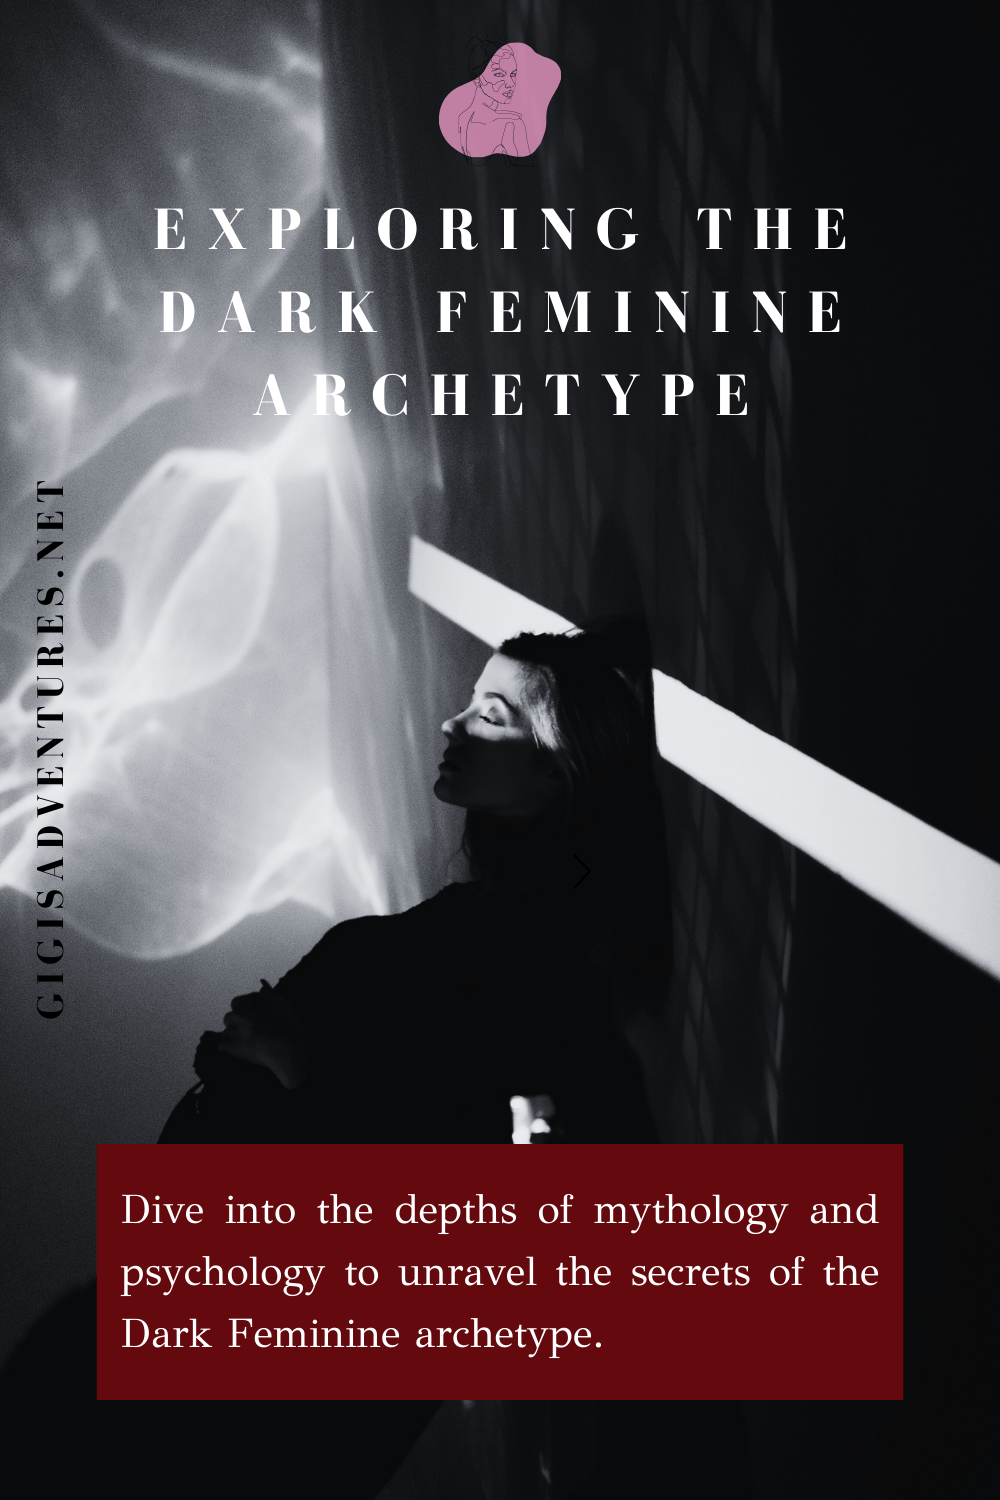 dark feminine, dark feminine energy, dark femininity